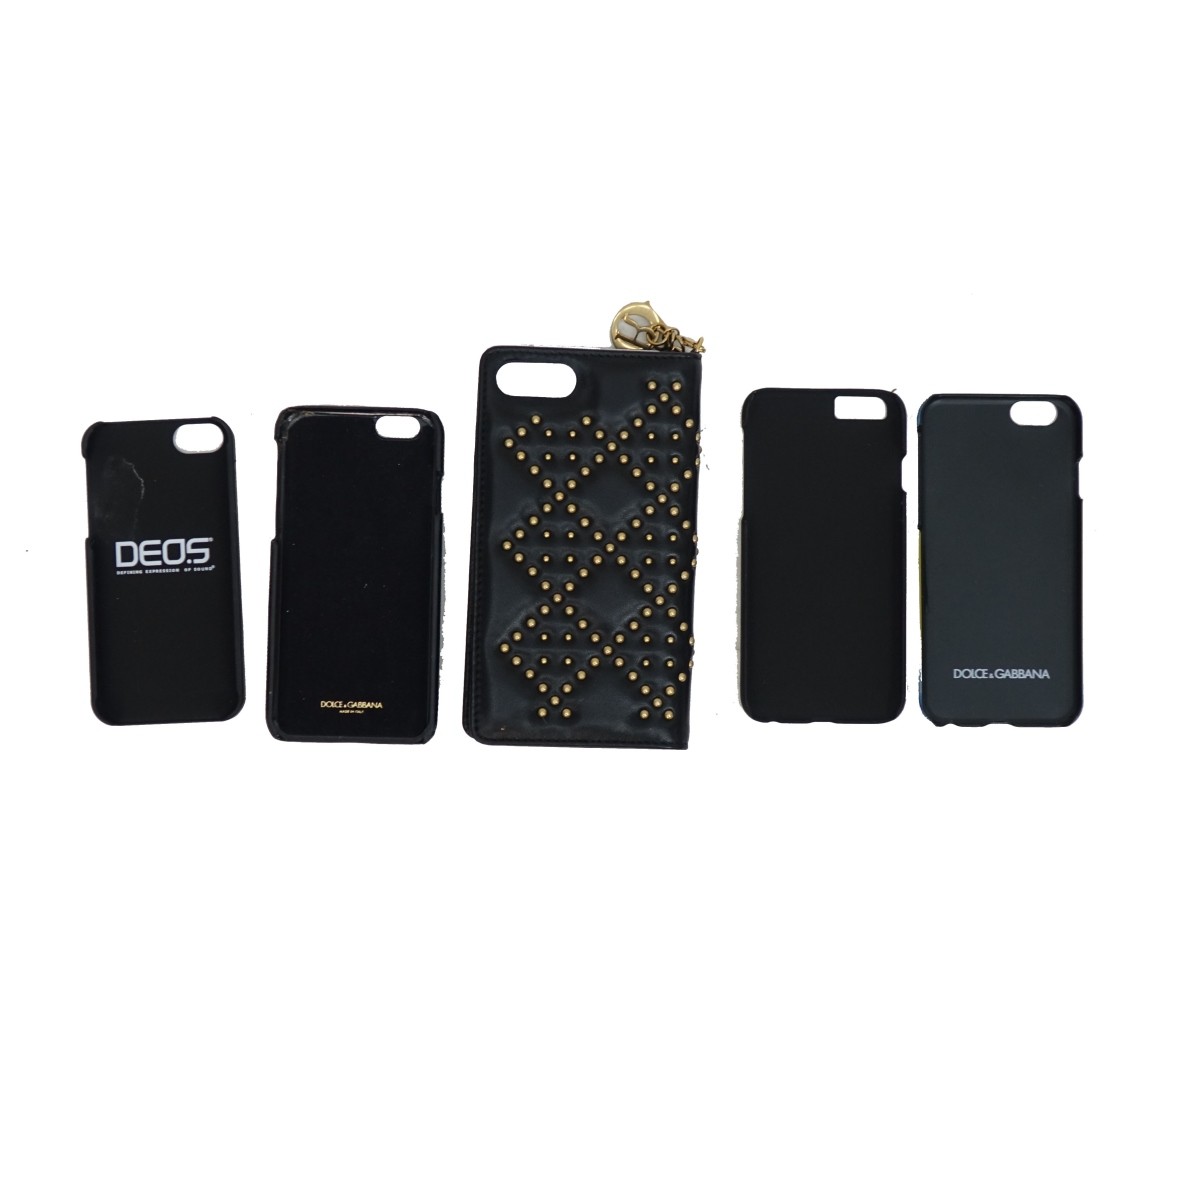 Designer Iphone Cases